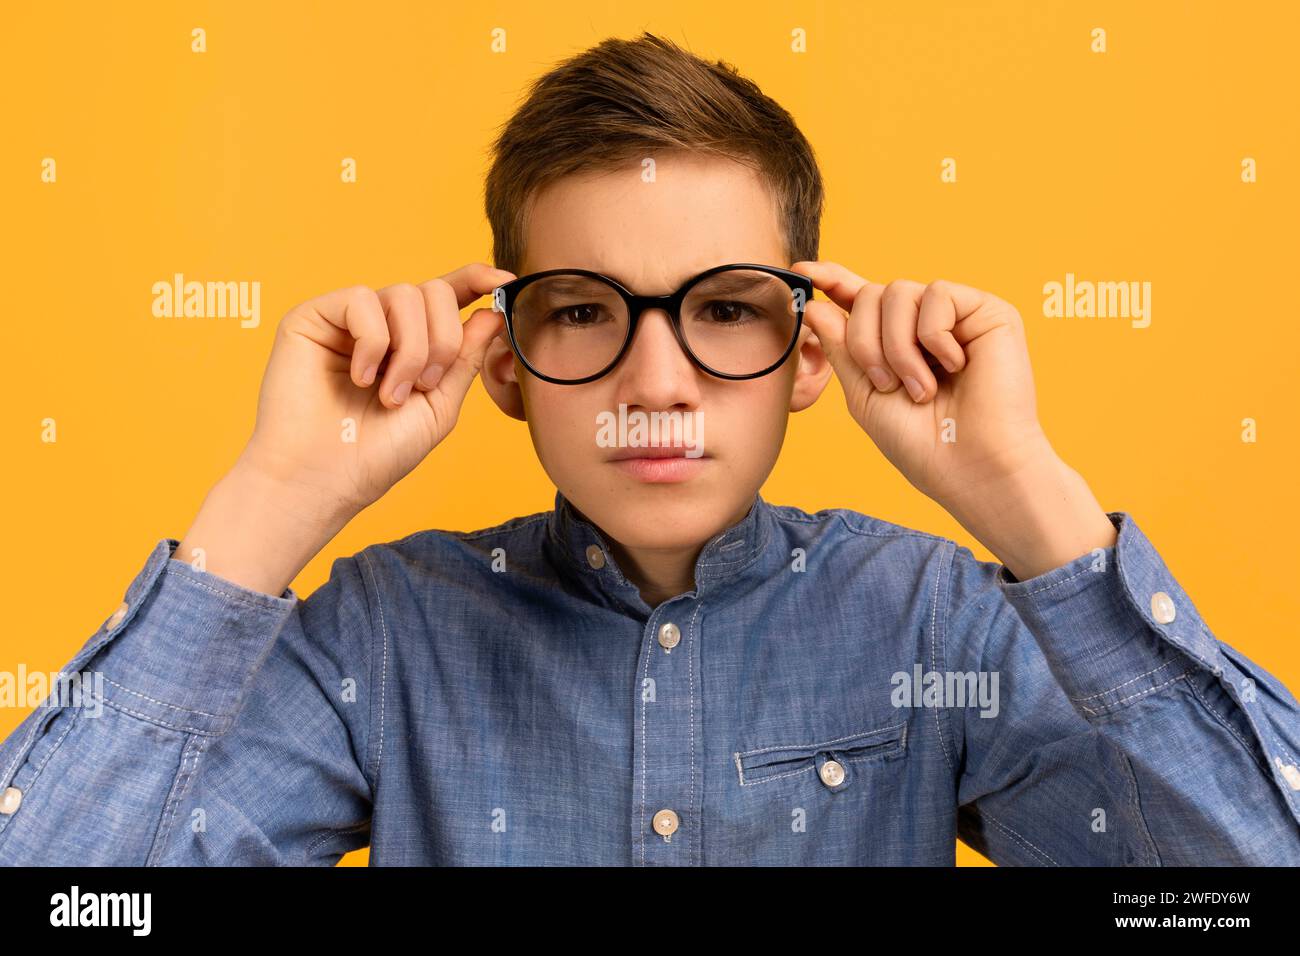 Ragazzo adolescente concentrato con camicia in denim che regola i suoi grandi occhiali neri Foto Stock